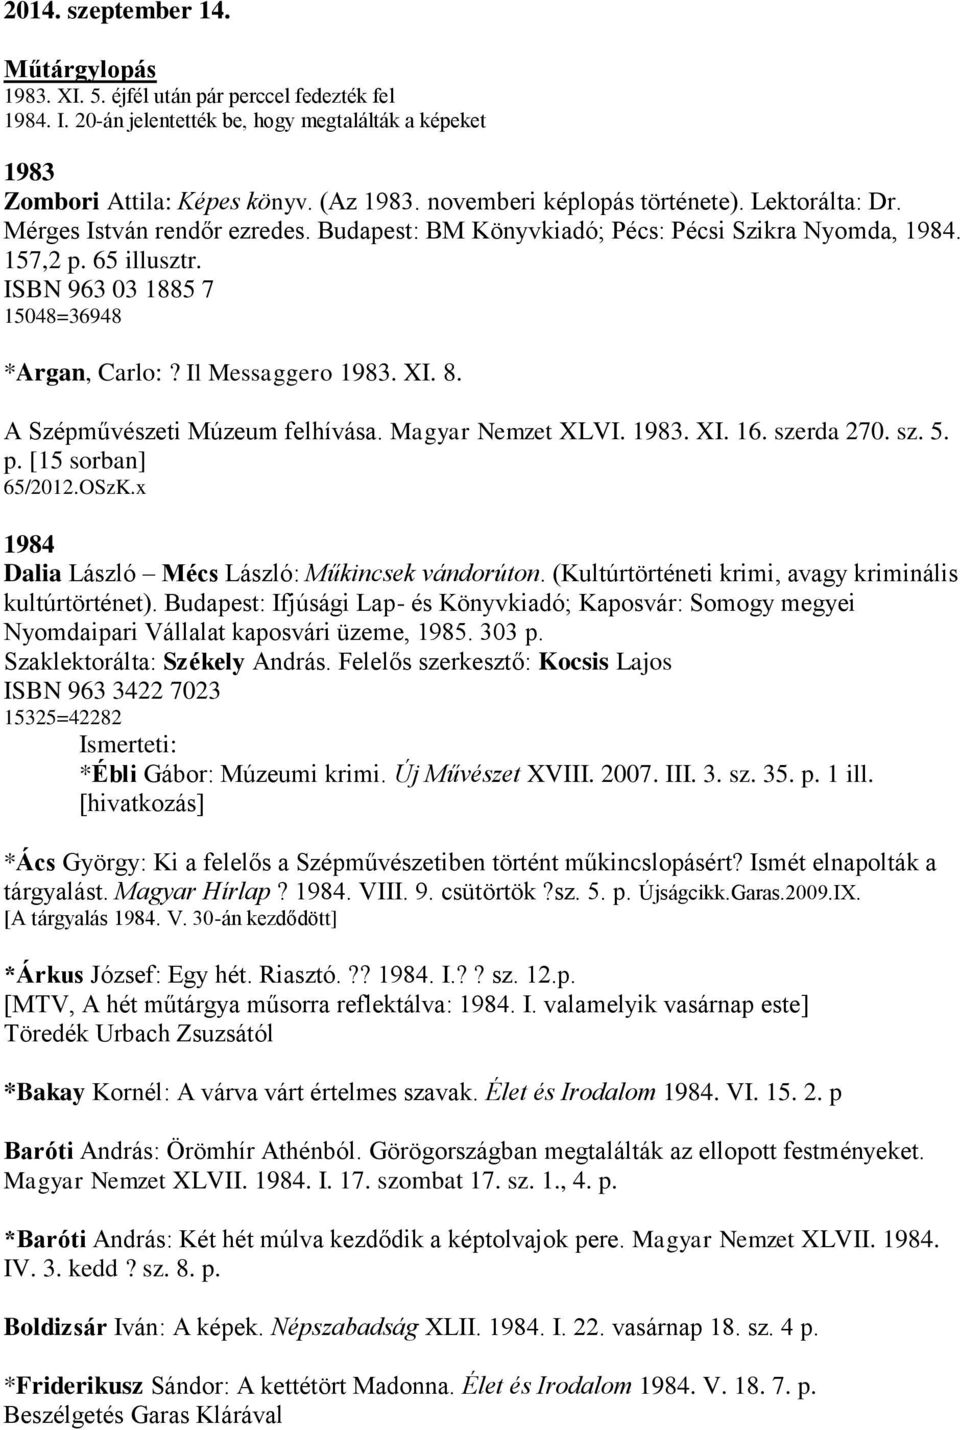 ISBN 963 03 1885 7 15048=36948 *Argan, Carlo:? Il Messaggero 1983. XI. 8. A Szépművészeti Múzeum felhívása. Magyar Nemzet XLVI. 1983. XI. 16. szerda 270. sz. 5. p. [15 sorban] 65/2012.OSzK.